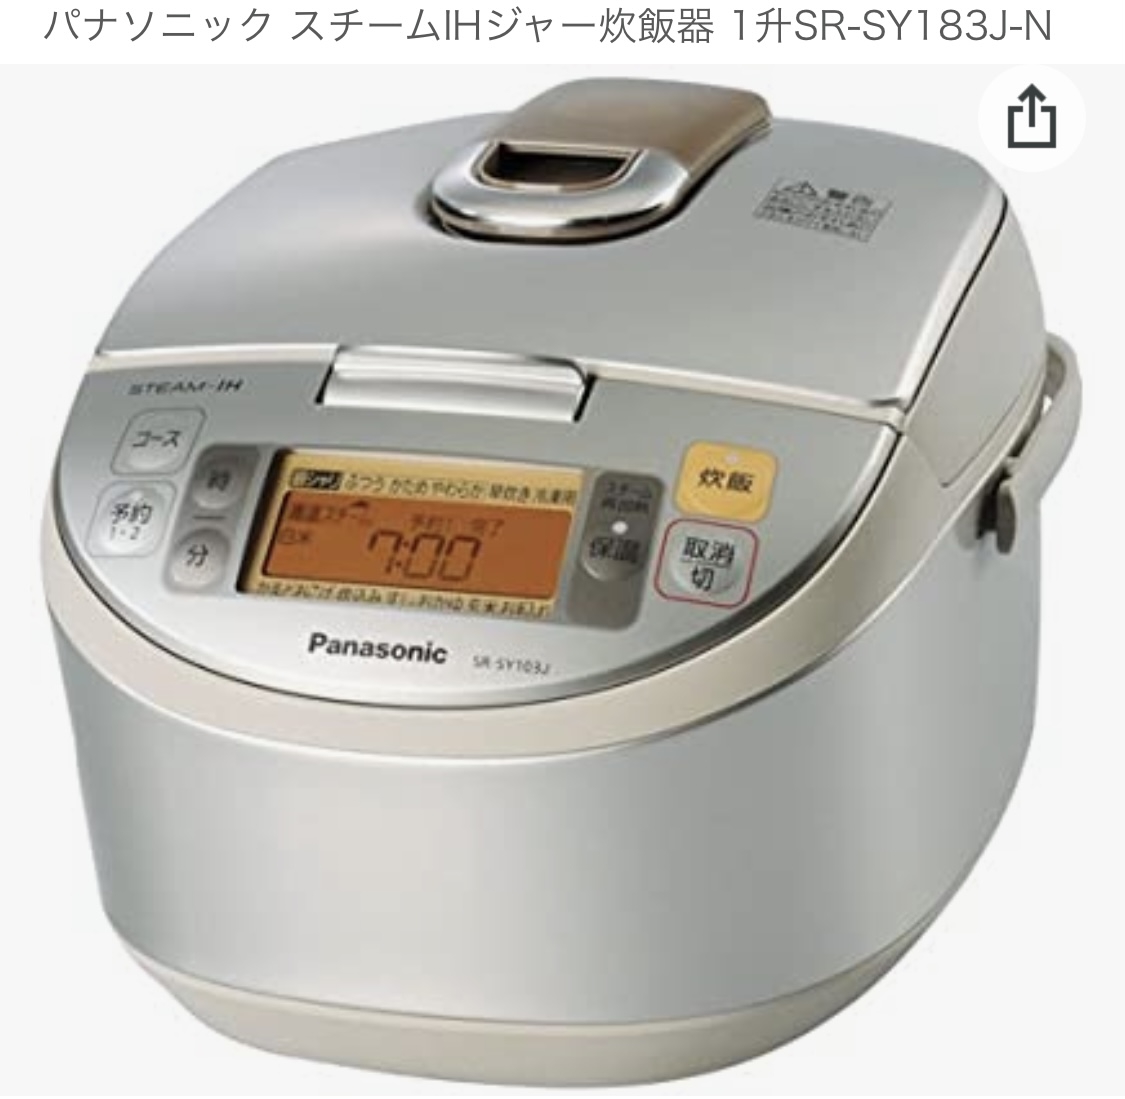 Panasonic(パナソニック) スチームIHジャー炊飯器 SR-SY183J-Nに関するホトメキさんの口コミ画像1